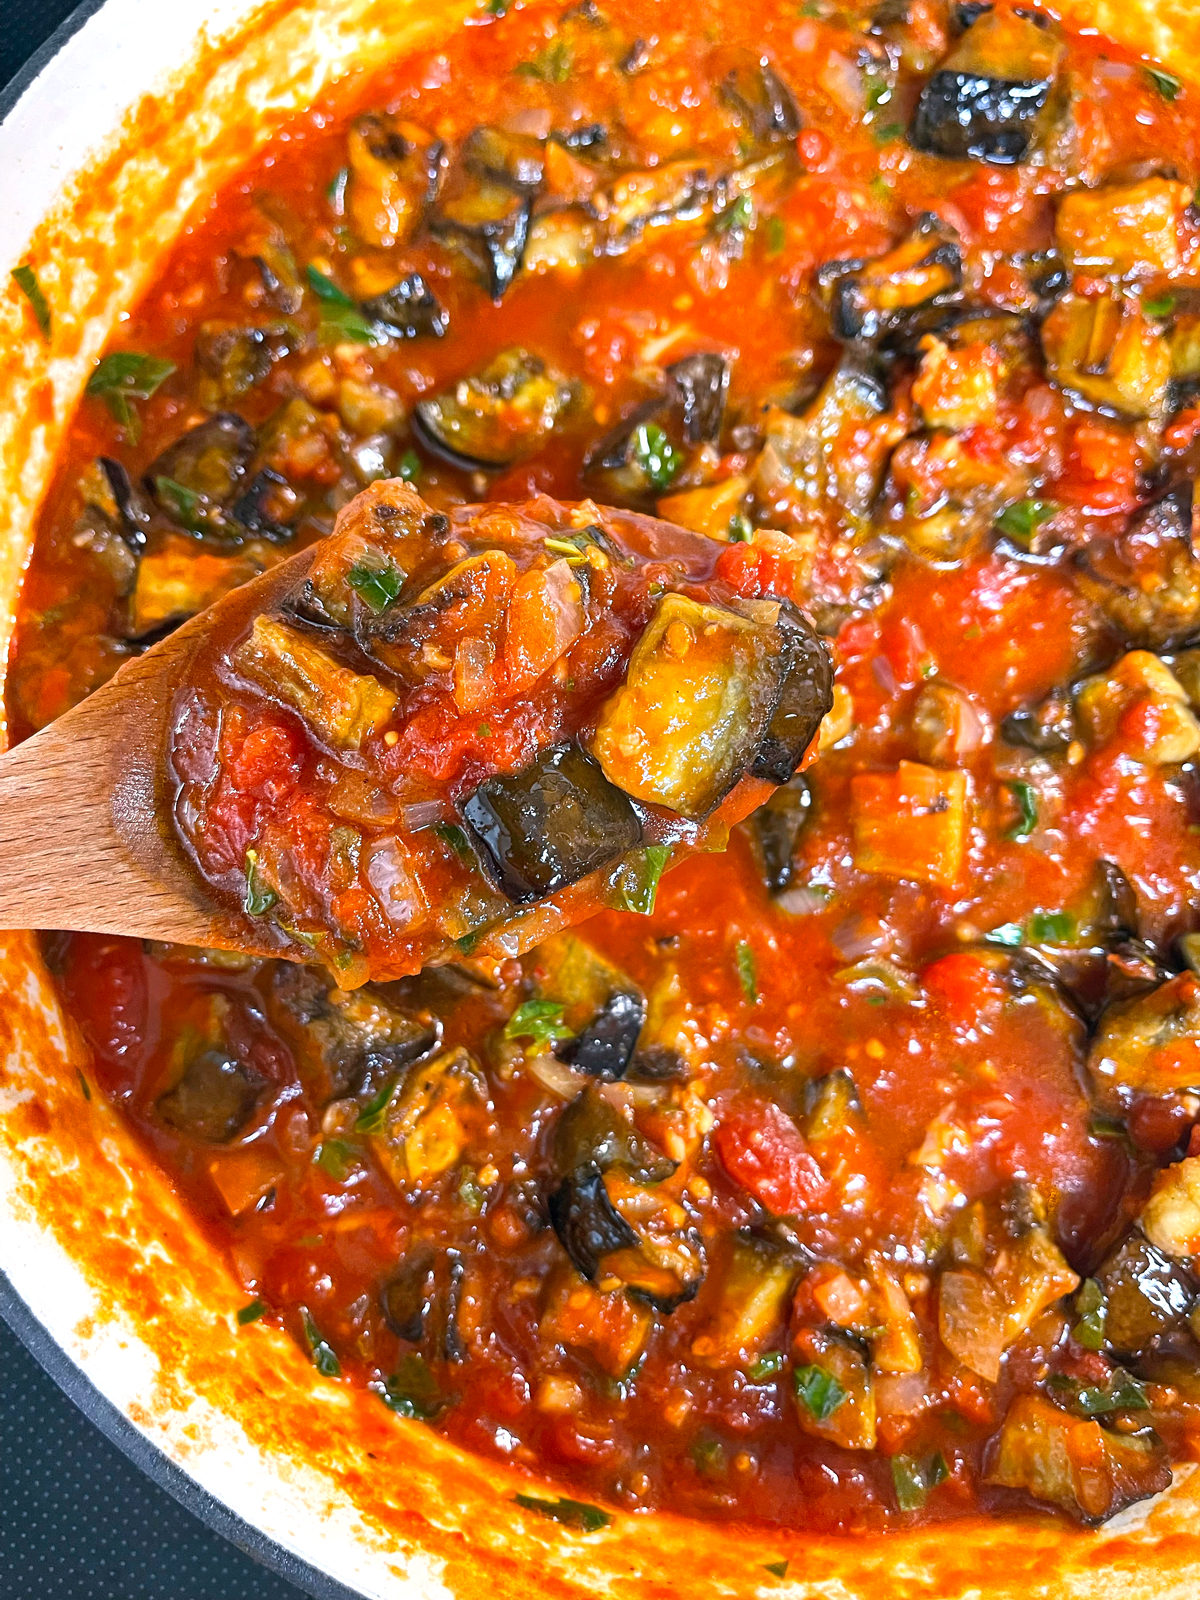 pasta alla norma recipe authentic traditional sicilian eggplant tomato sauce garlic basil ricotta salata italian